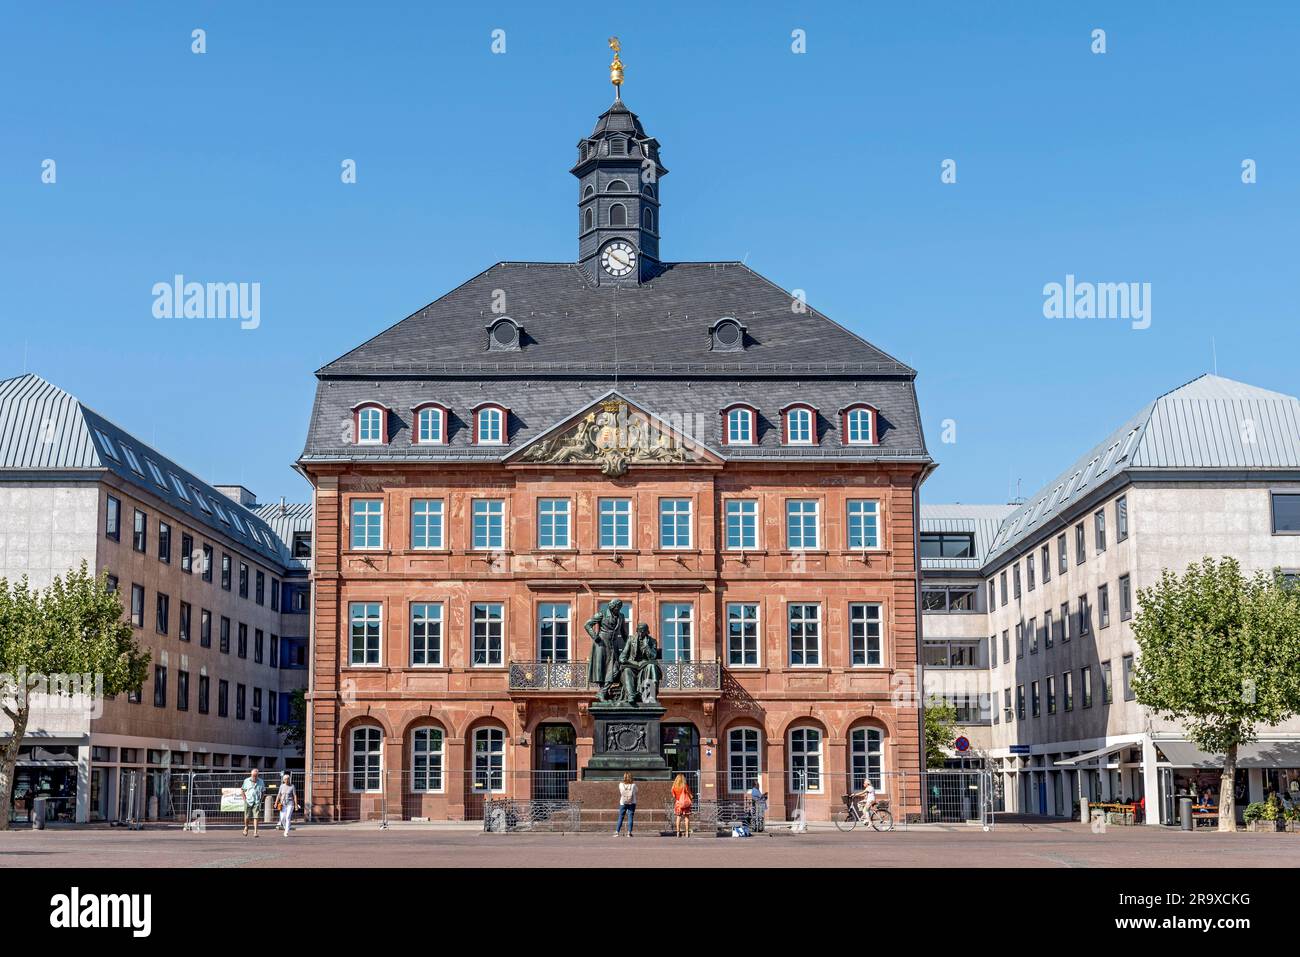 Hôtel de ville de Neustadt, baroque, Monument aux Frères Jakob et Wilhelm Grimm, Monument aux Frères Grimm, double statue de bronze de Syrius Eberle, Fairy Banque D'Images